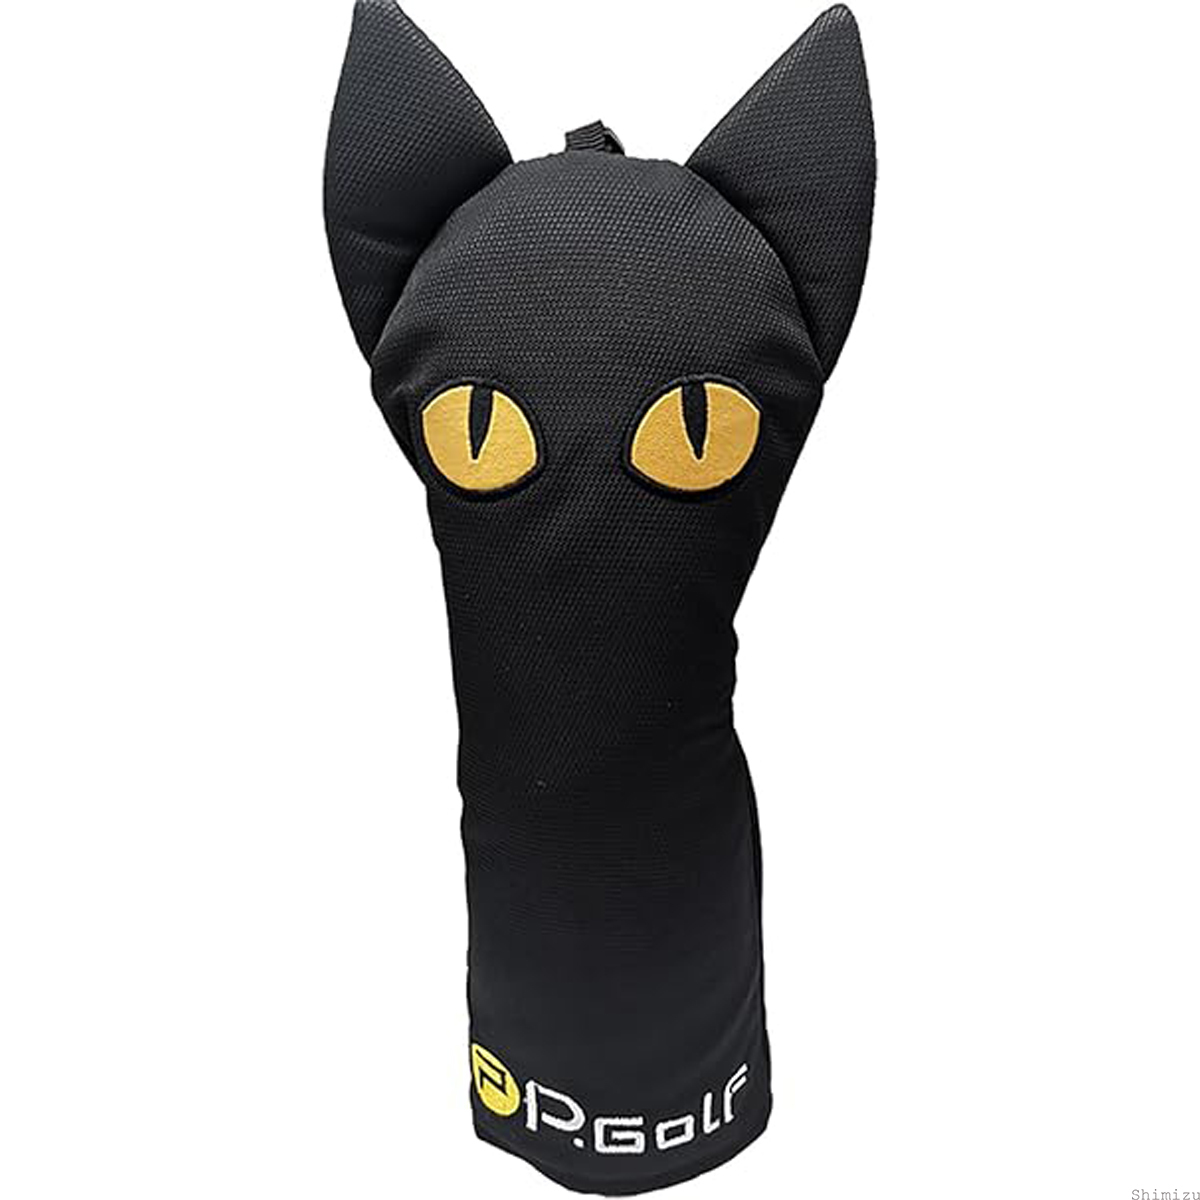 黒猫 ゴルフ ヘッドカバー DR用 ウッド用 ドライバー用 目立つ おしゃれ キュート デザイン 人気 プレゼント 贈り物 コンペ 景品